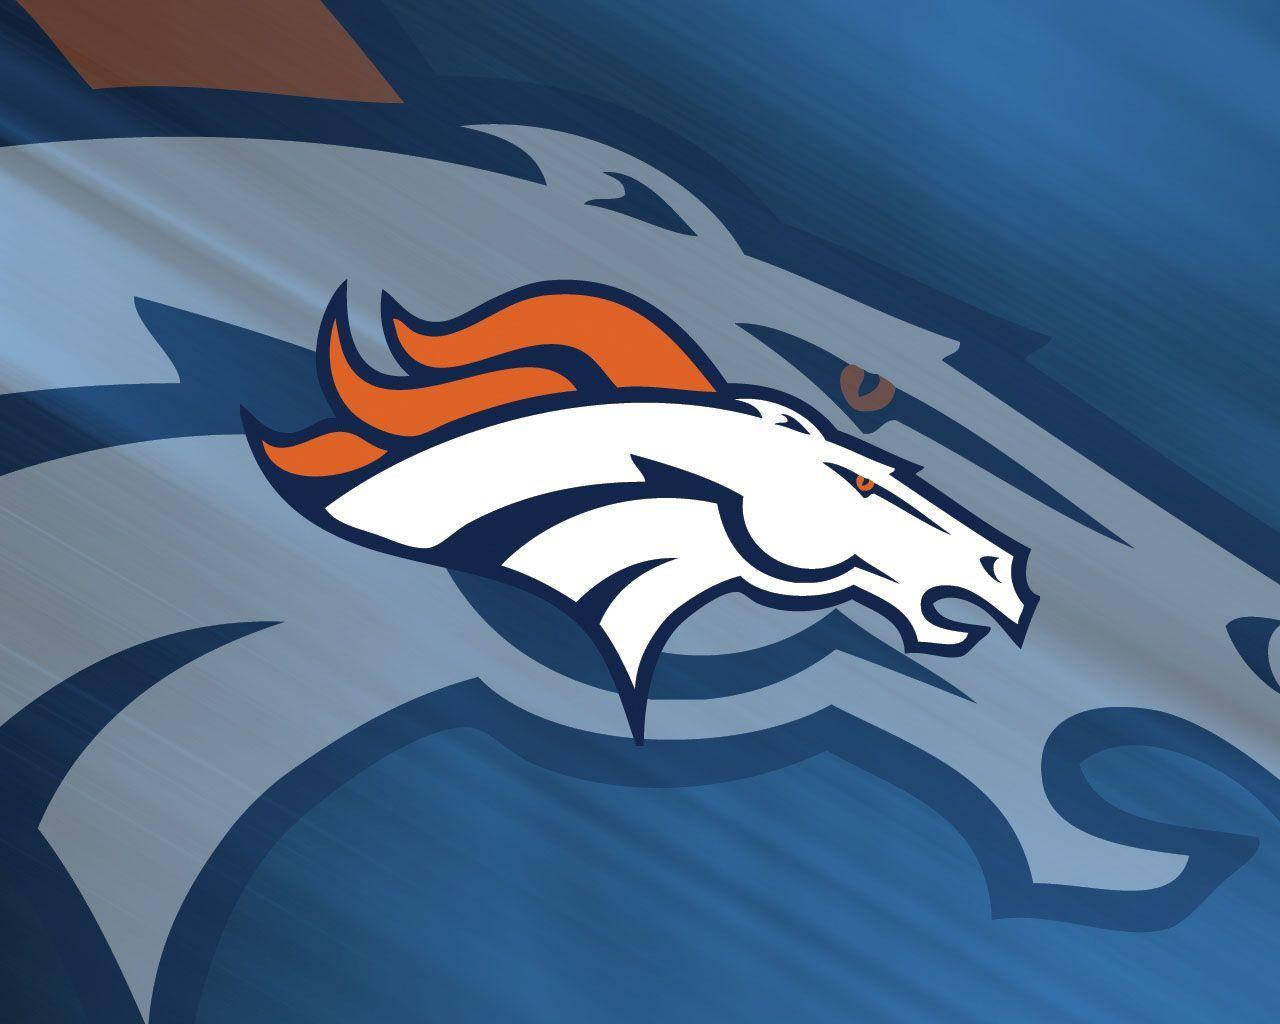 Denver Broncos Hest NFL Team Logo Wallpaper